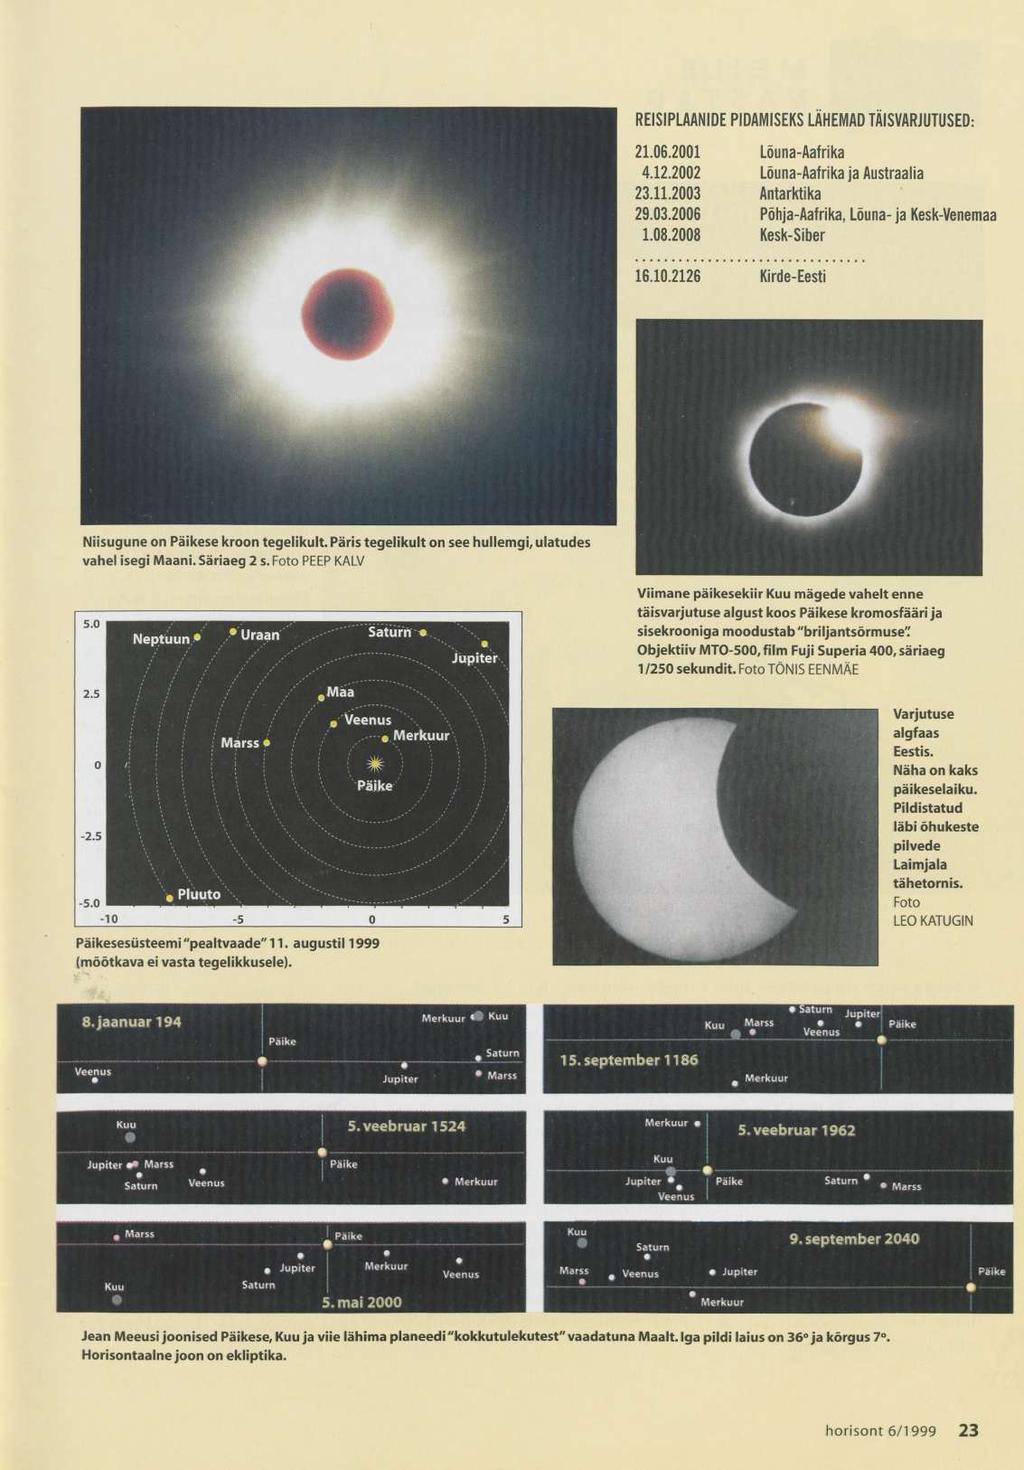 5.0 2.5 0-2.5-10 -5 0 5 Päikesesüsteemi "pealtvaade" 11. augustil 1999 (mõõtkava ei vasta tegelikkusele).